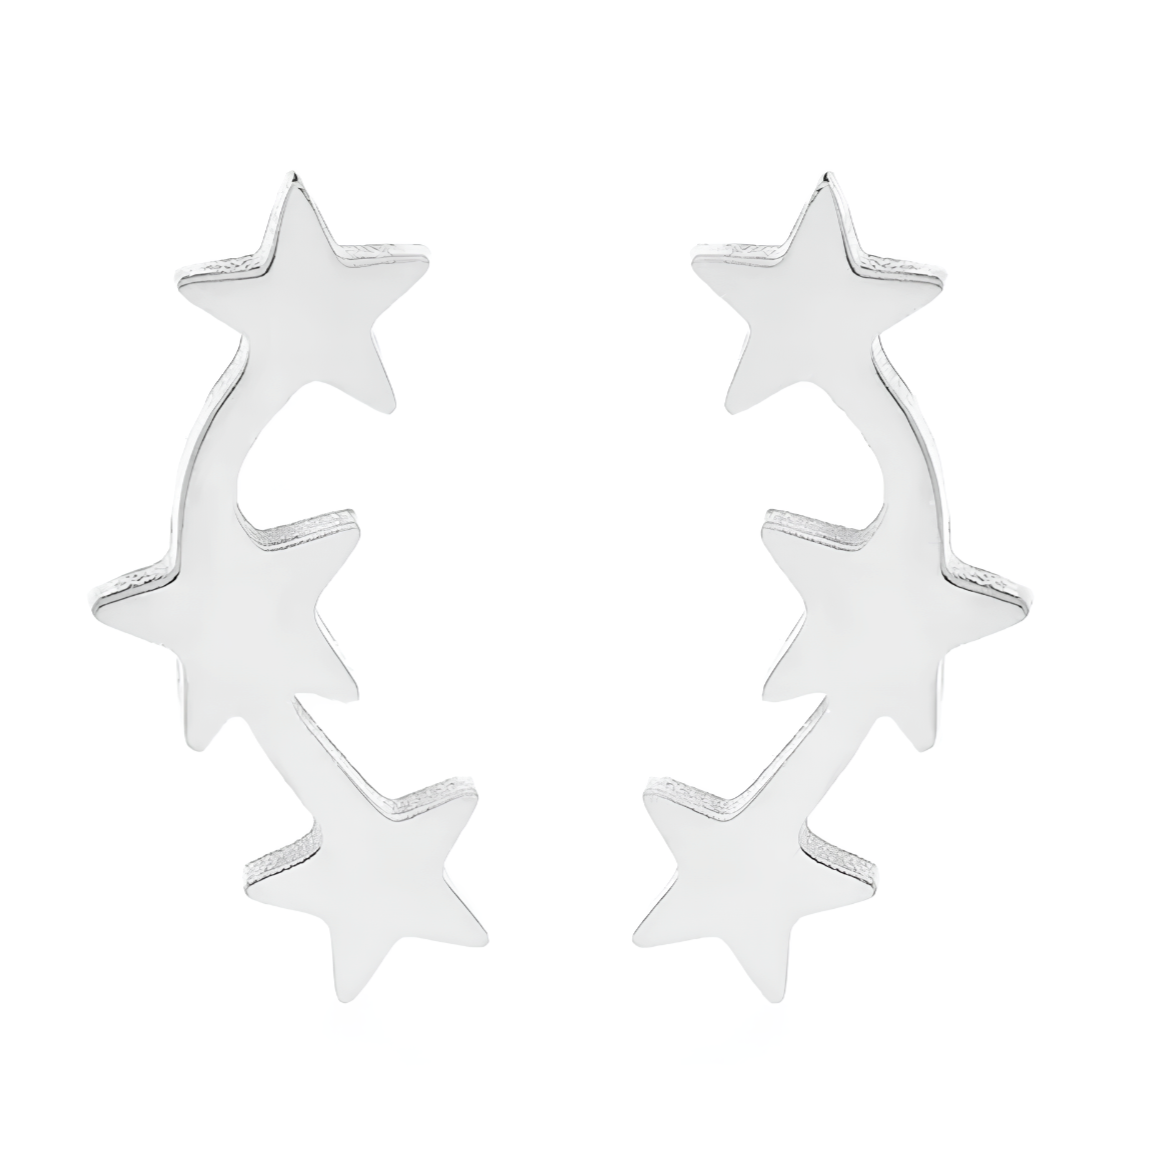 Boucles d'oreilles acier argent 3 petites étoiles.   Détails produit : Couleur argent.&nbsp;Acier. Pendentifs petits&nbsp;étoiles. Taille 5 mm x 12 mm.  Version couleur or